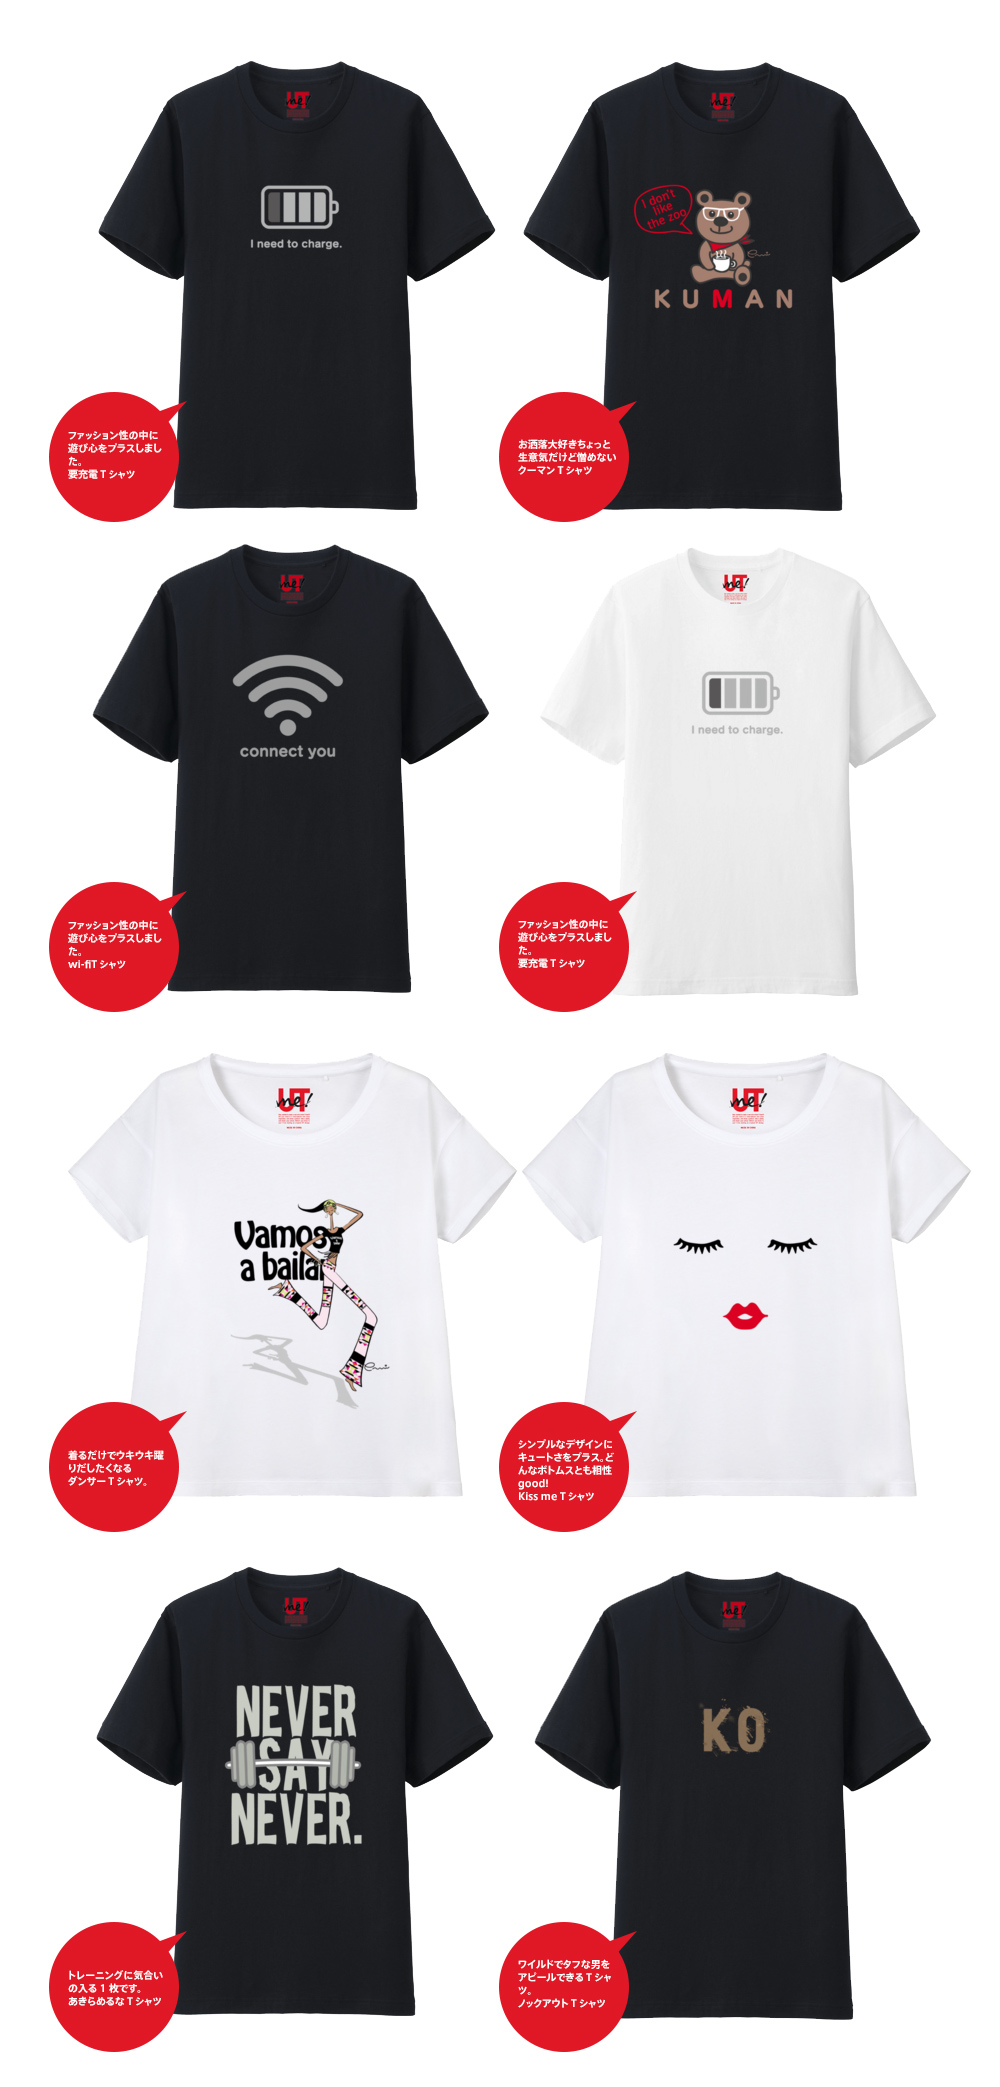 T Shirts Utme Tシャツデザイン 03entertainment デザインのコンビニ 東京のデザイン会社03e ゼロサンエンターテインメント